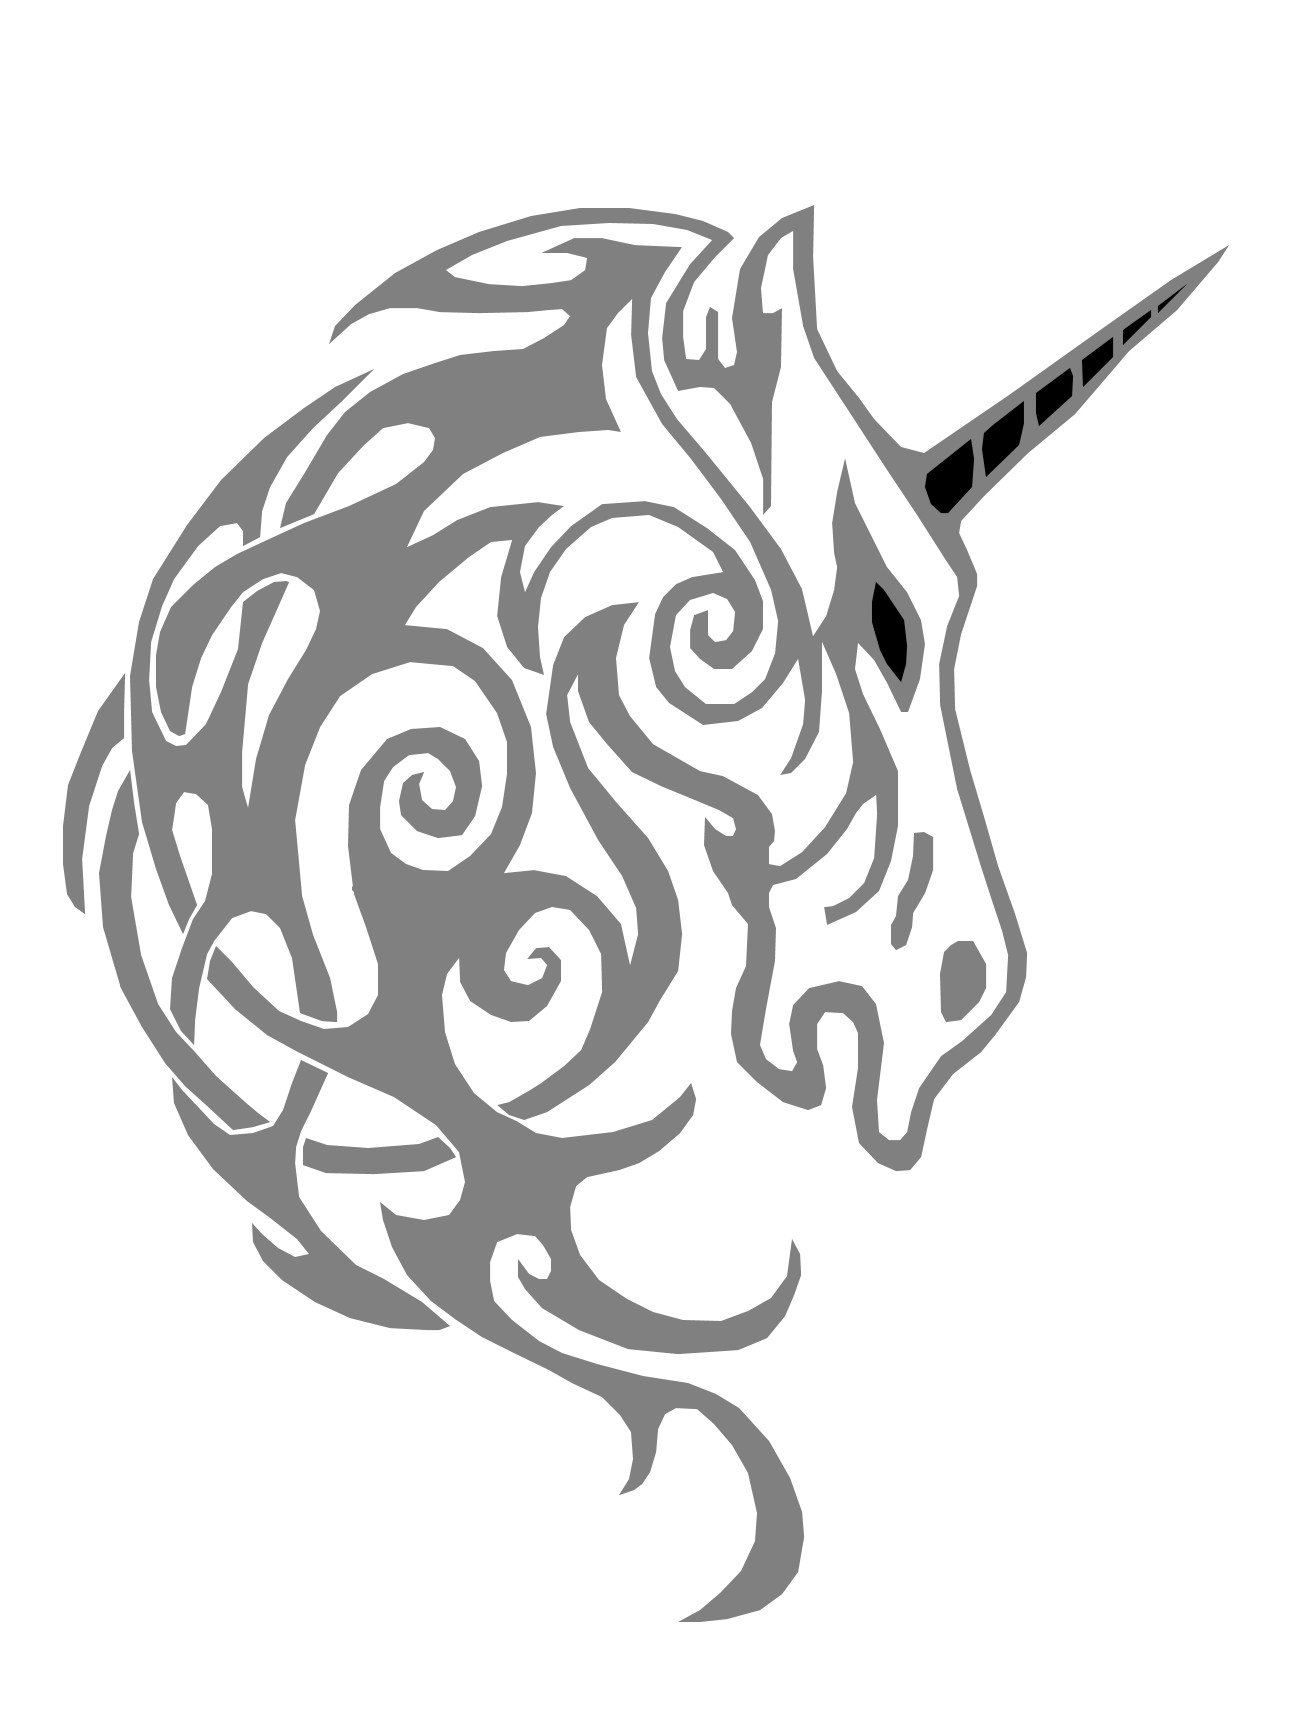 unicorn-pattern-by-pumpkin-crazy-on-deviantart